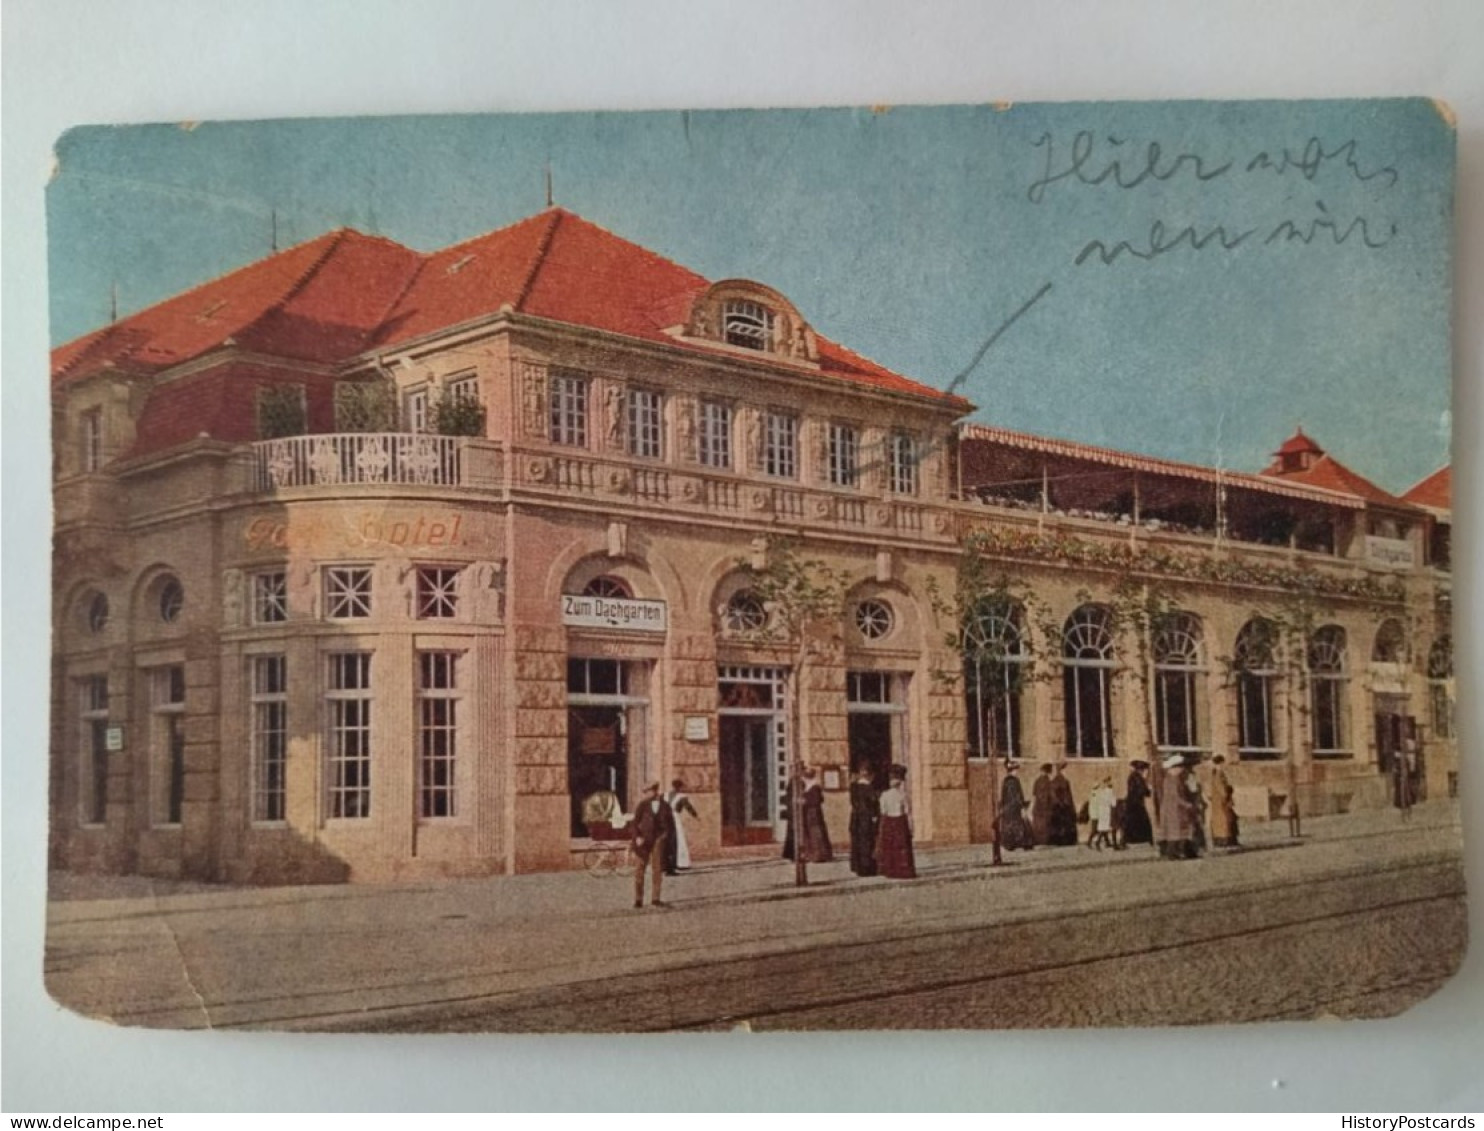 Dresden, Parkhotel Weißer Hirsch, Restaurant U. Café, 1927 - Dresden